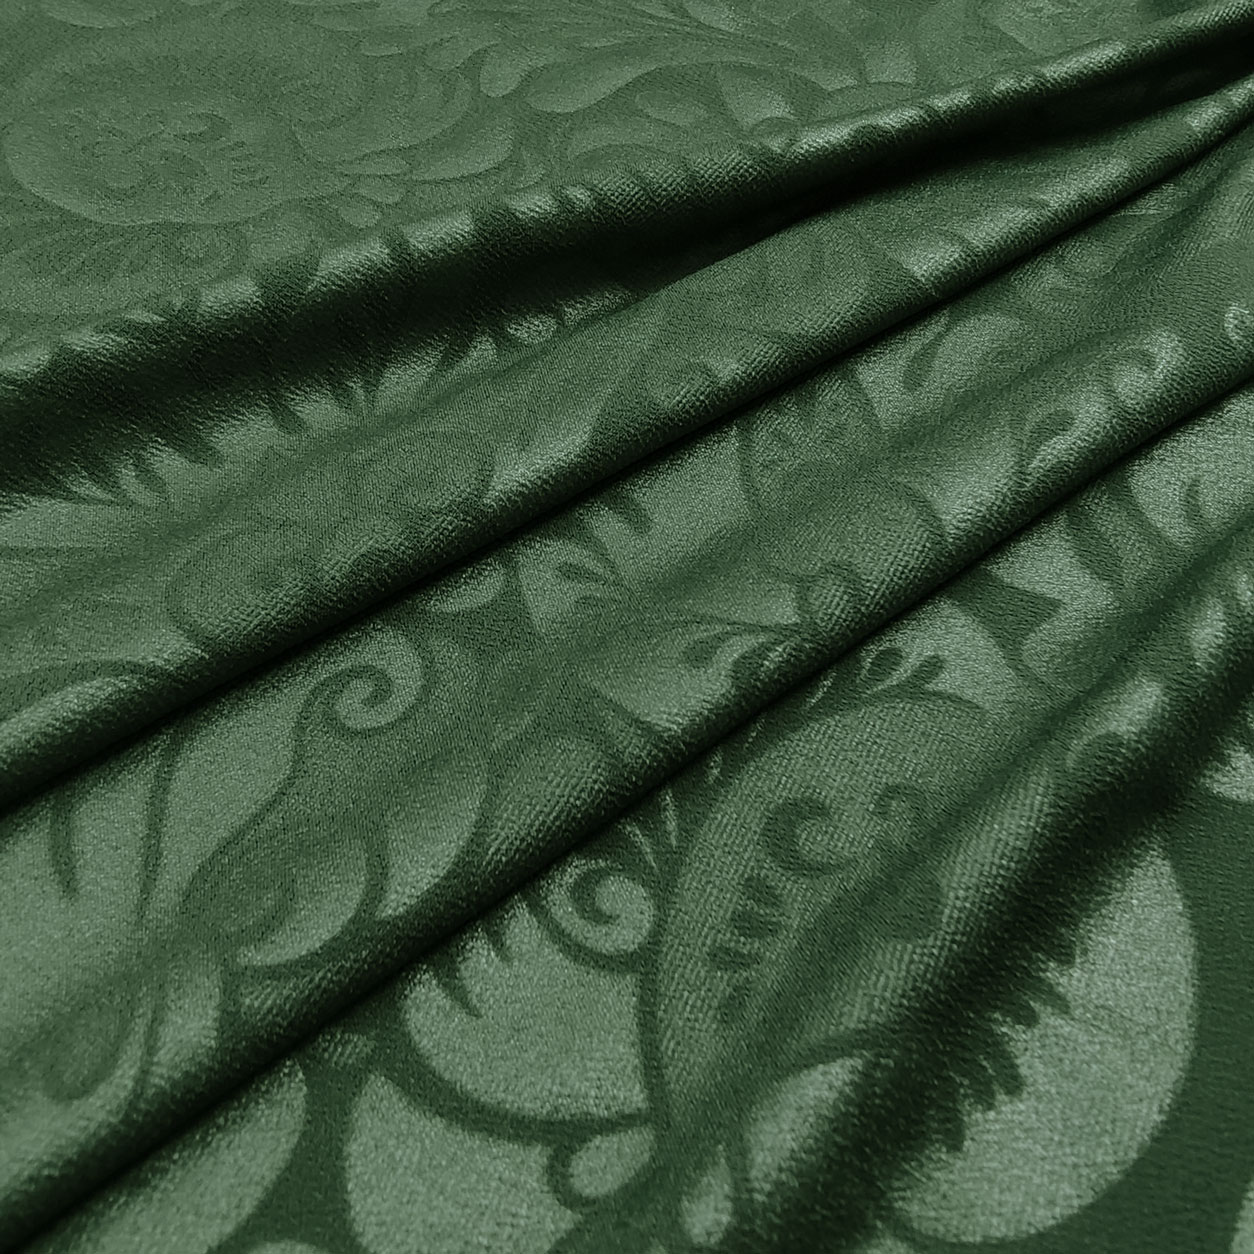 maglina-tessuto-elasticizzata-spalmata-damascata-verde-scuro